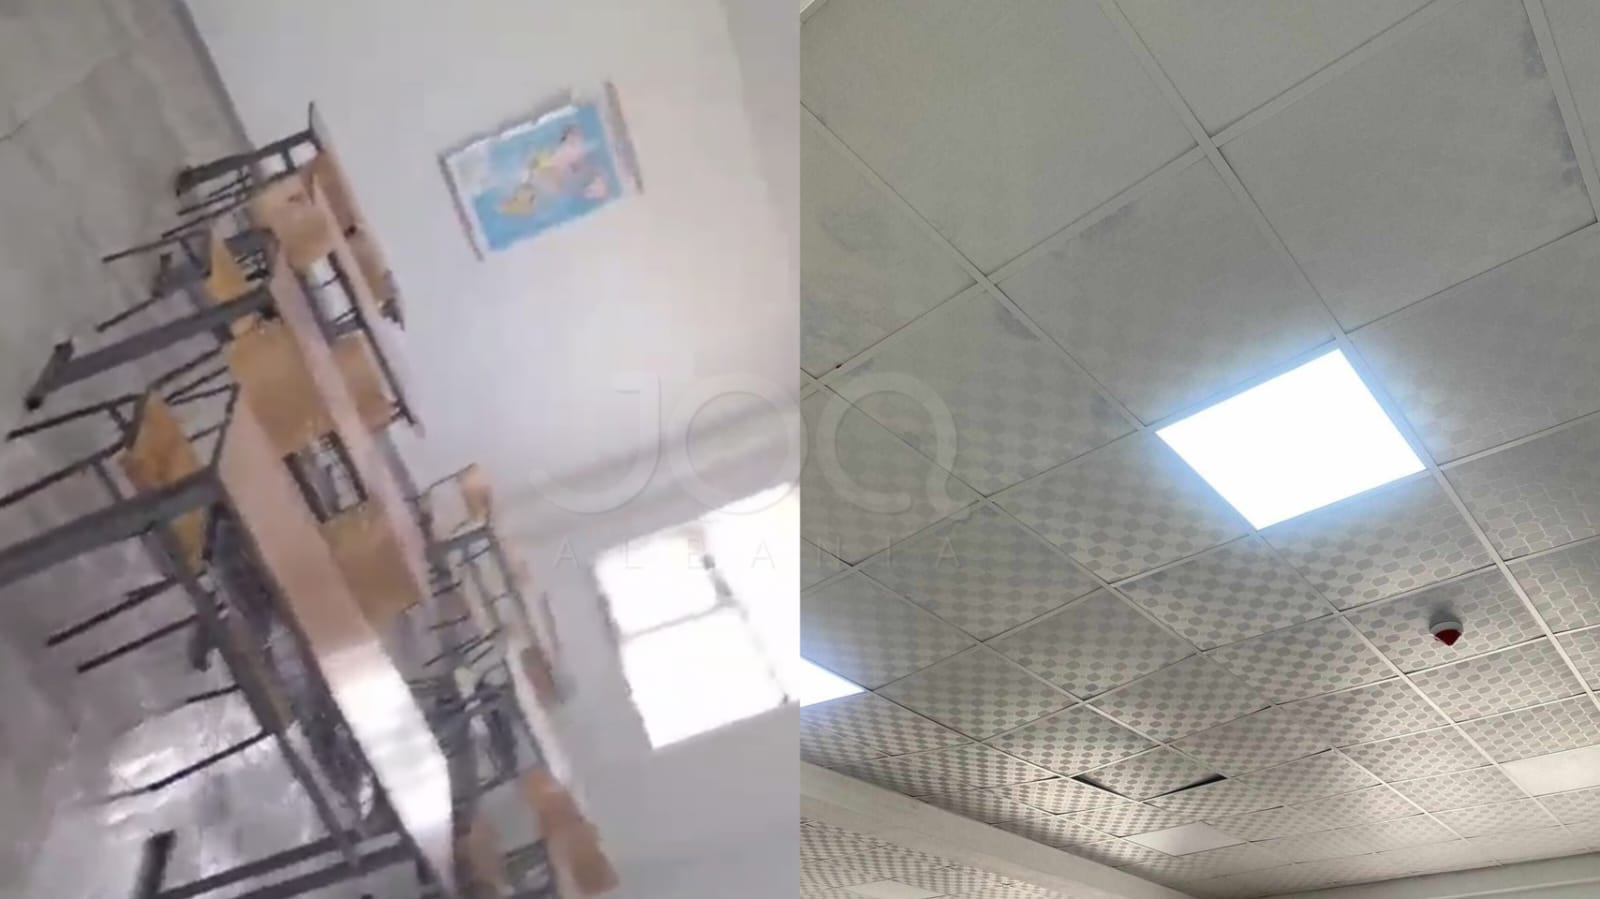 “Gjimnazi në Bubq pa ngrohje, tavani i shembur edhe pse ka 2 vite që është ndërtuar”